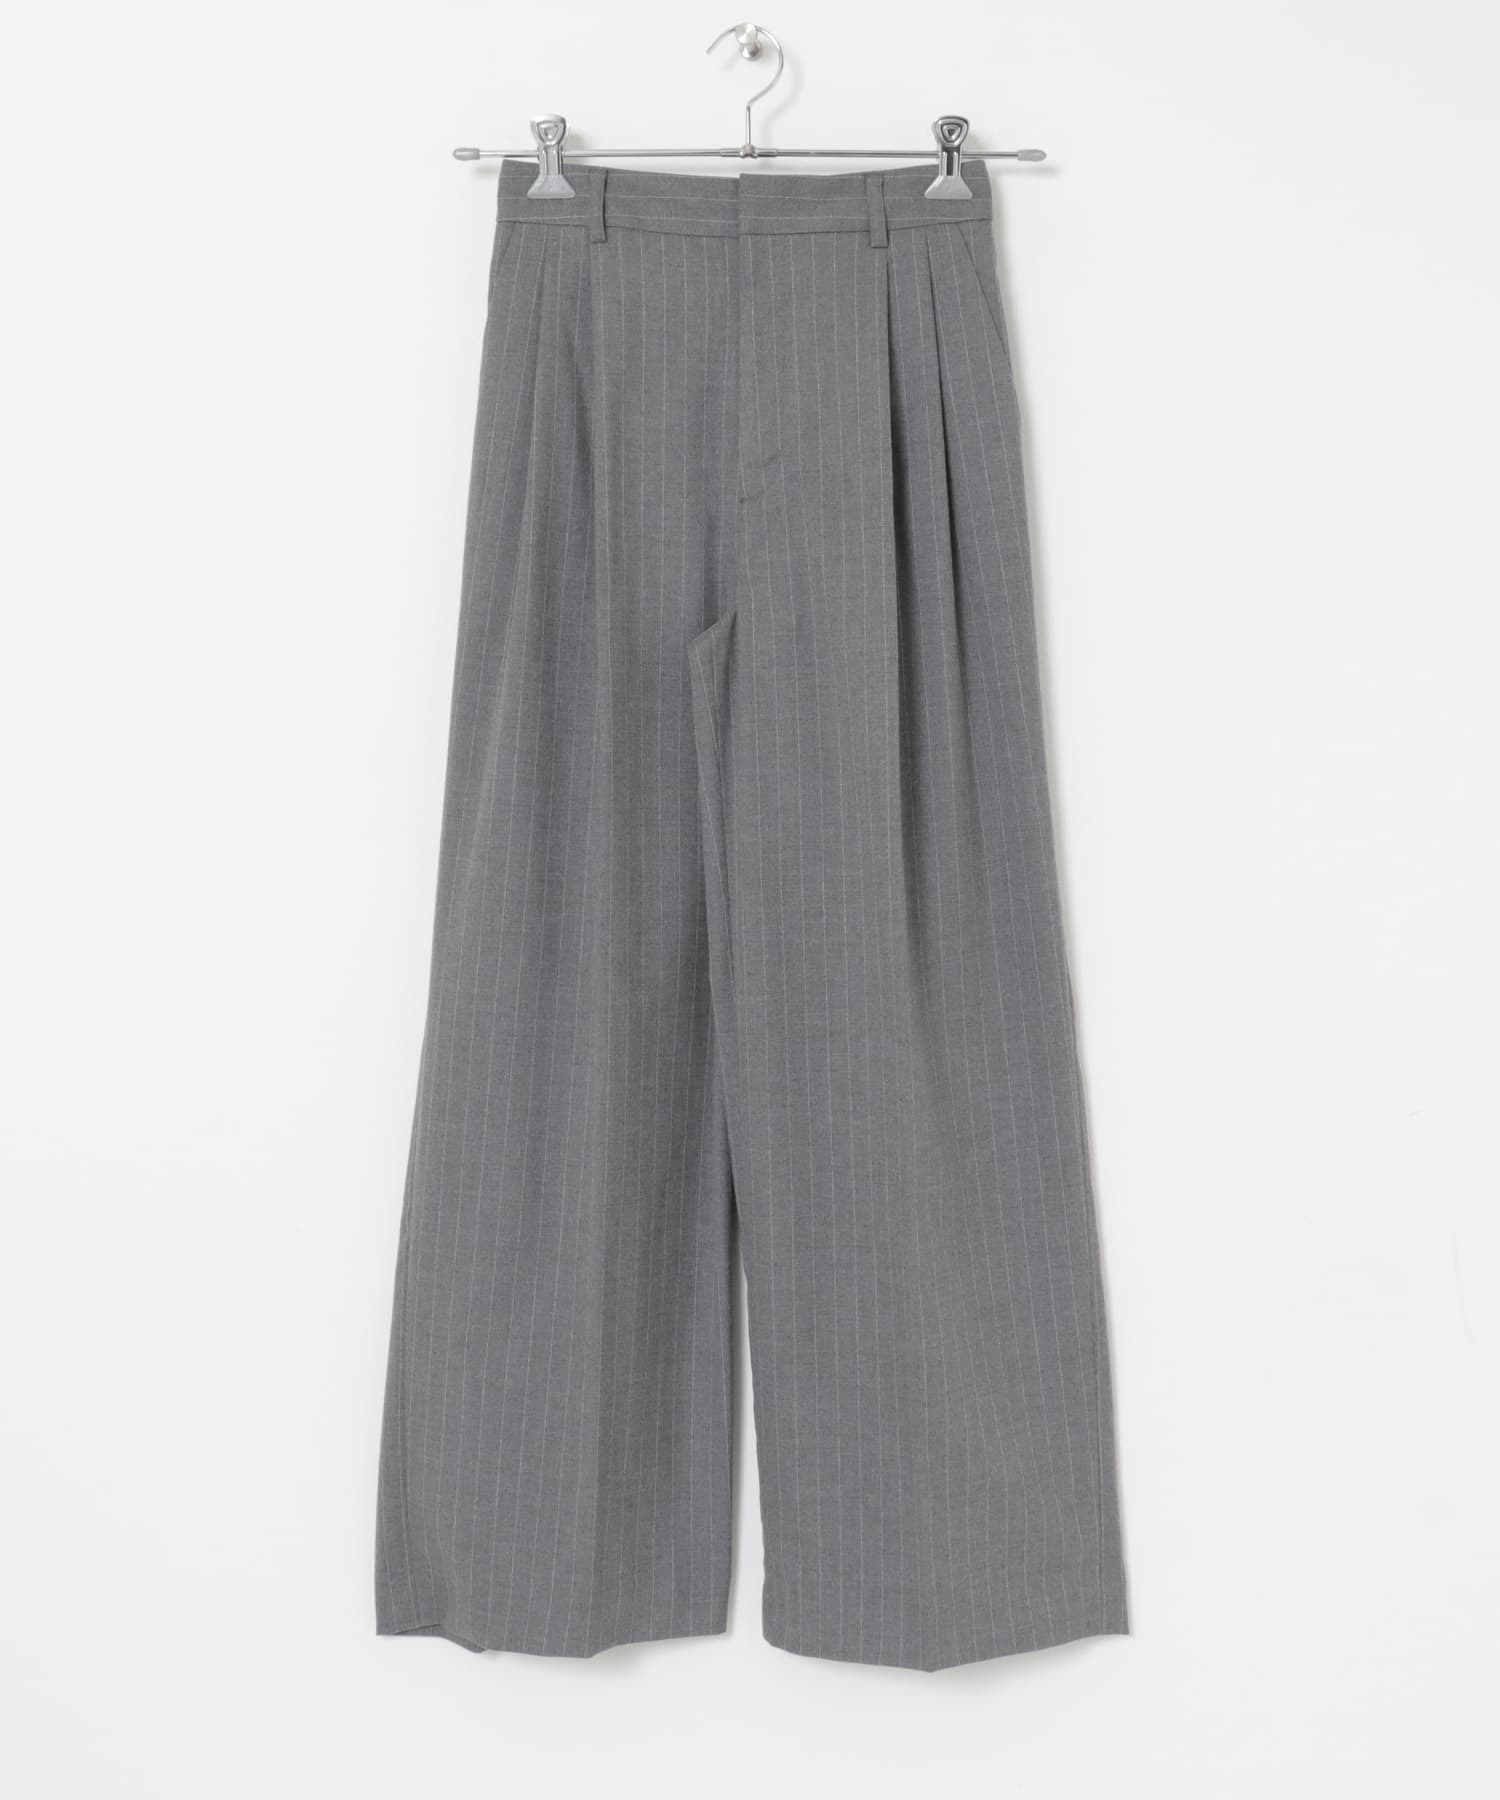 直條紋寬褲(灰色-36-GRAY)